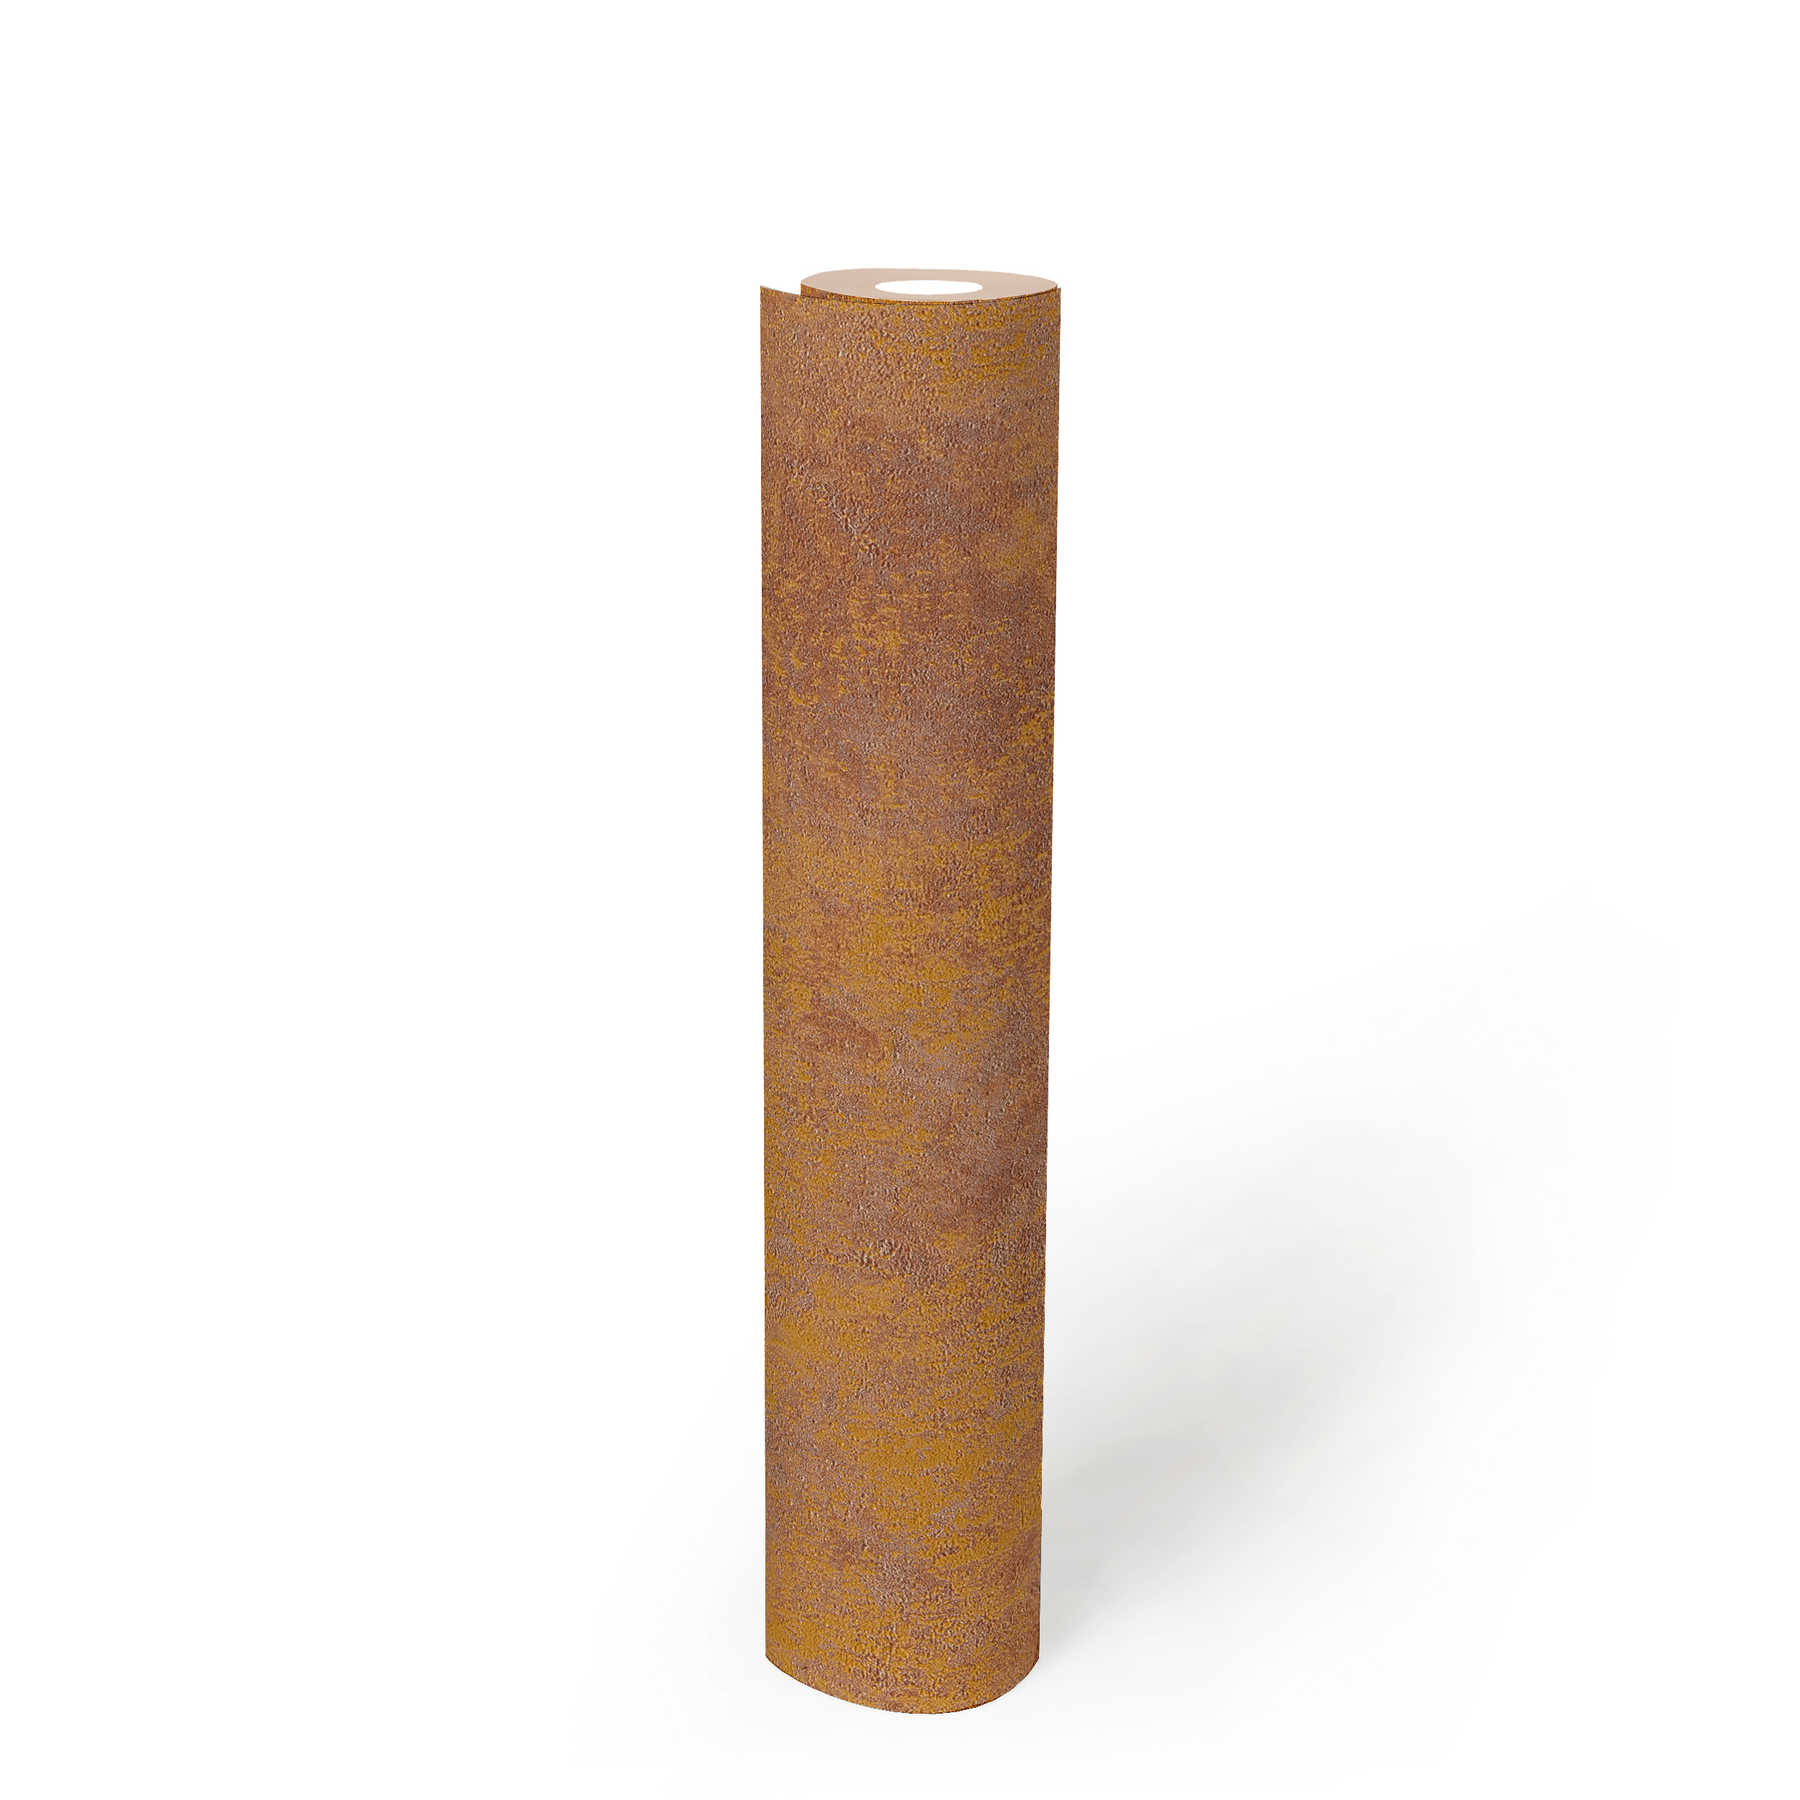             Papier peint intissé aspect rouille avec effet brillant - orange, cuivre, marron
        